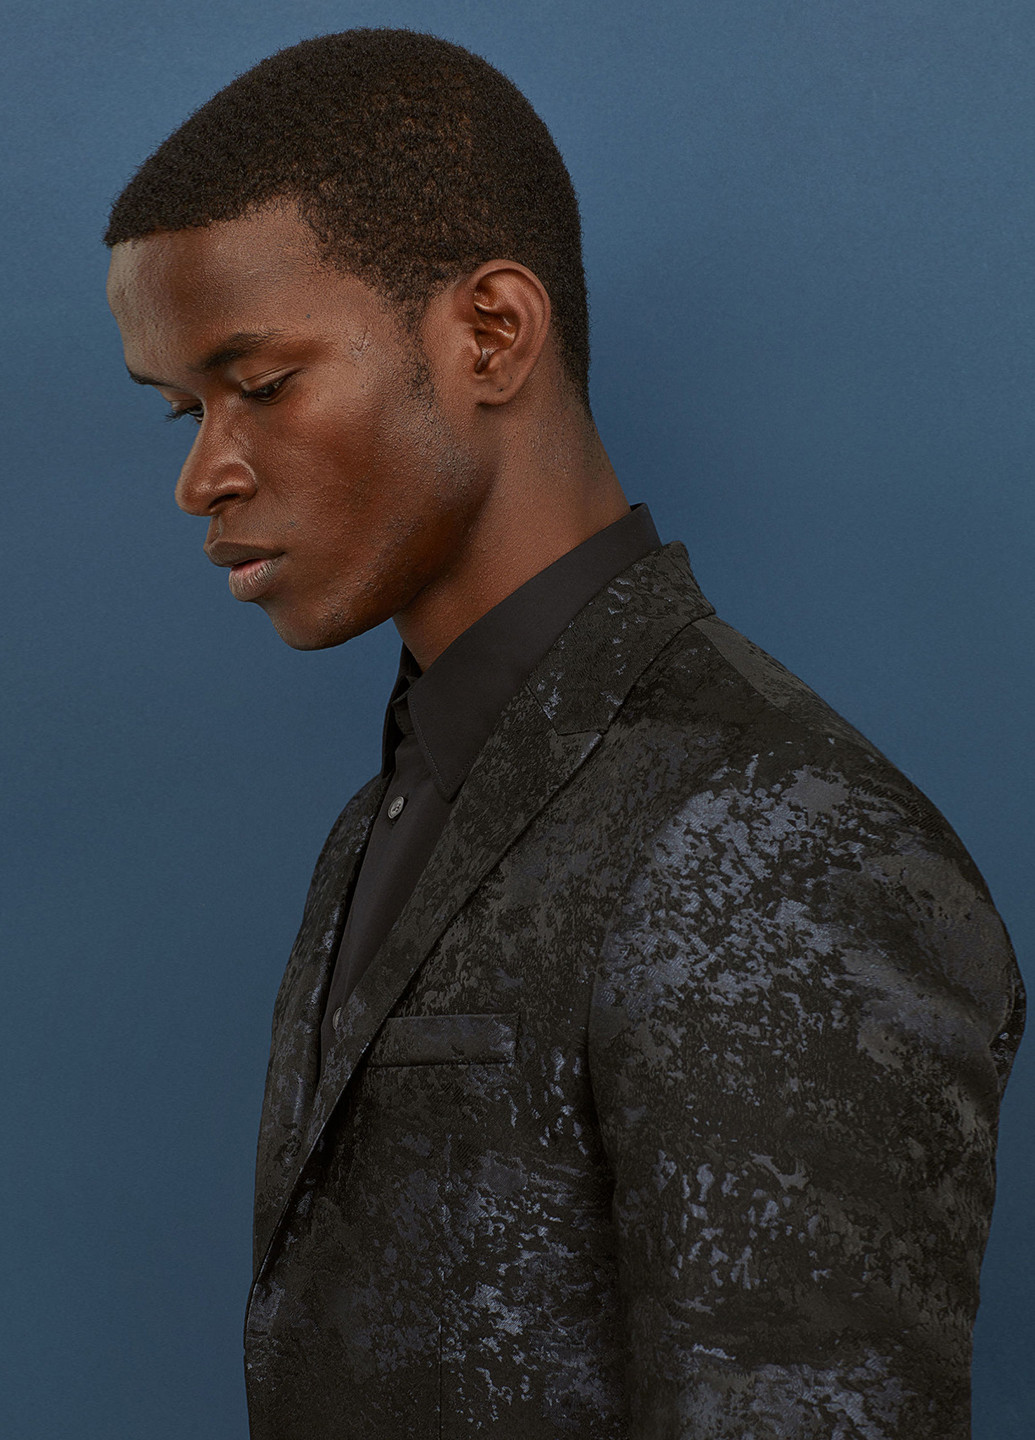 Піджак H&M абстрактний чорний діловий трикотаж, акрил, поліестер